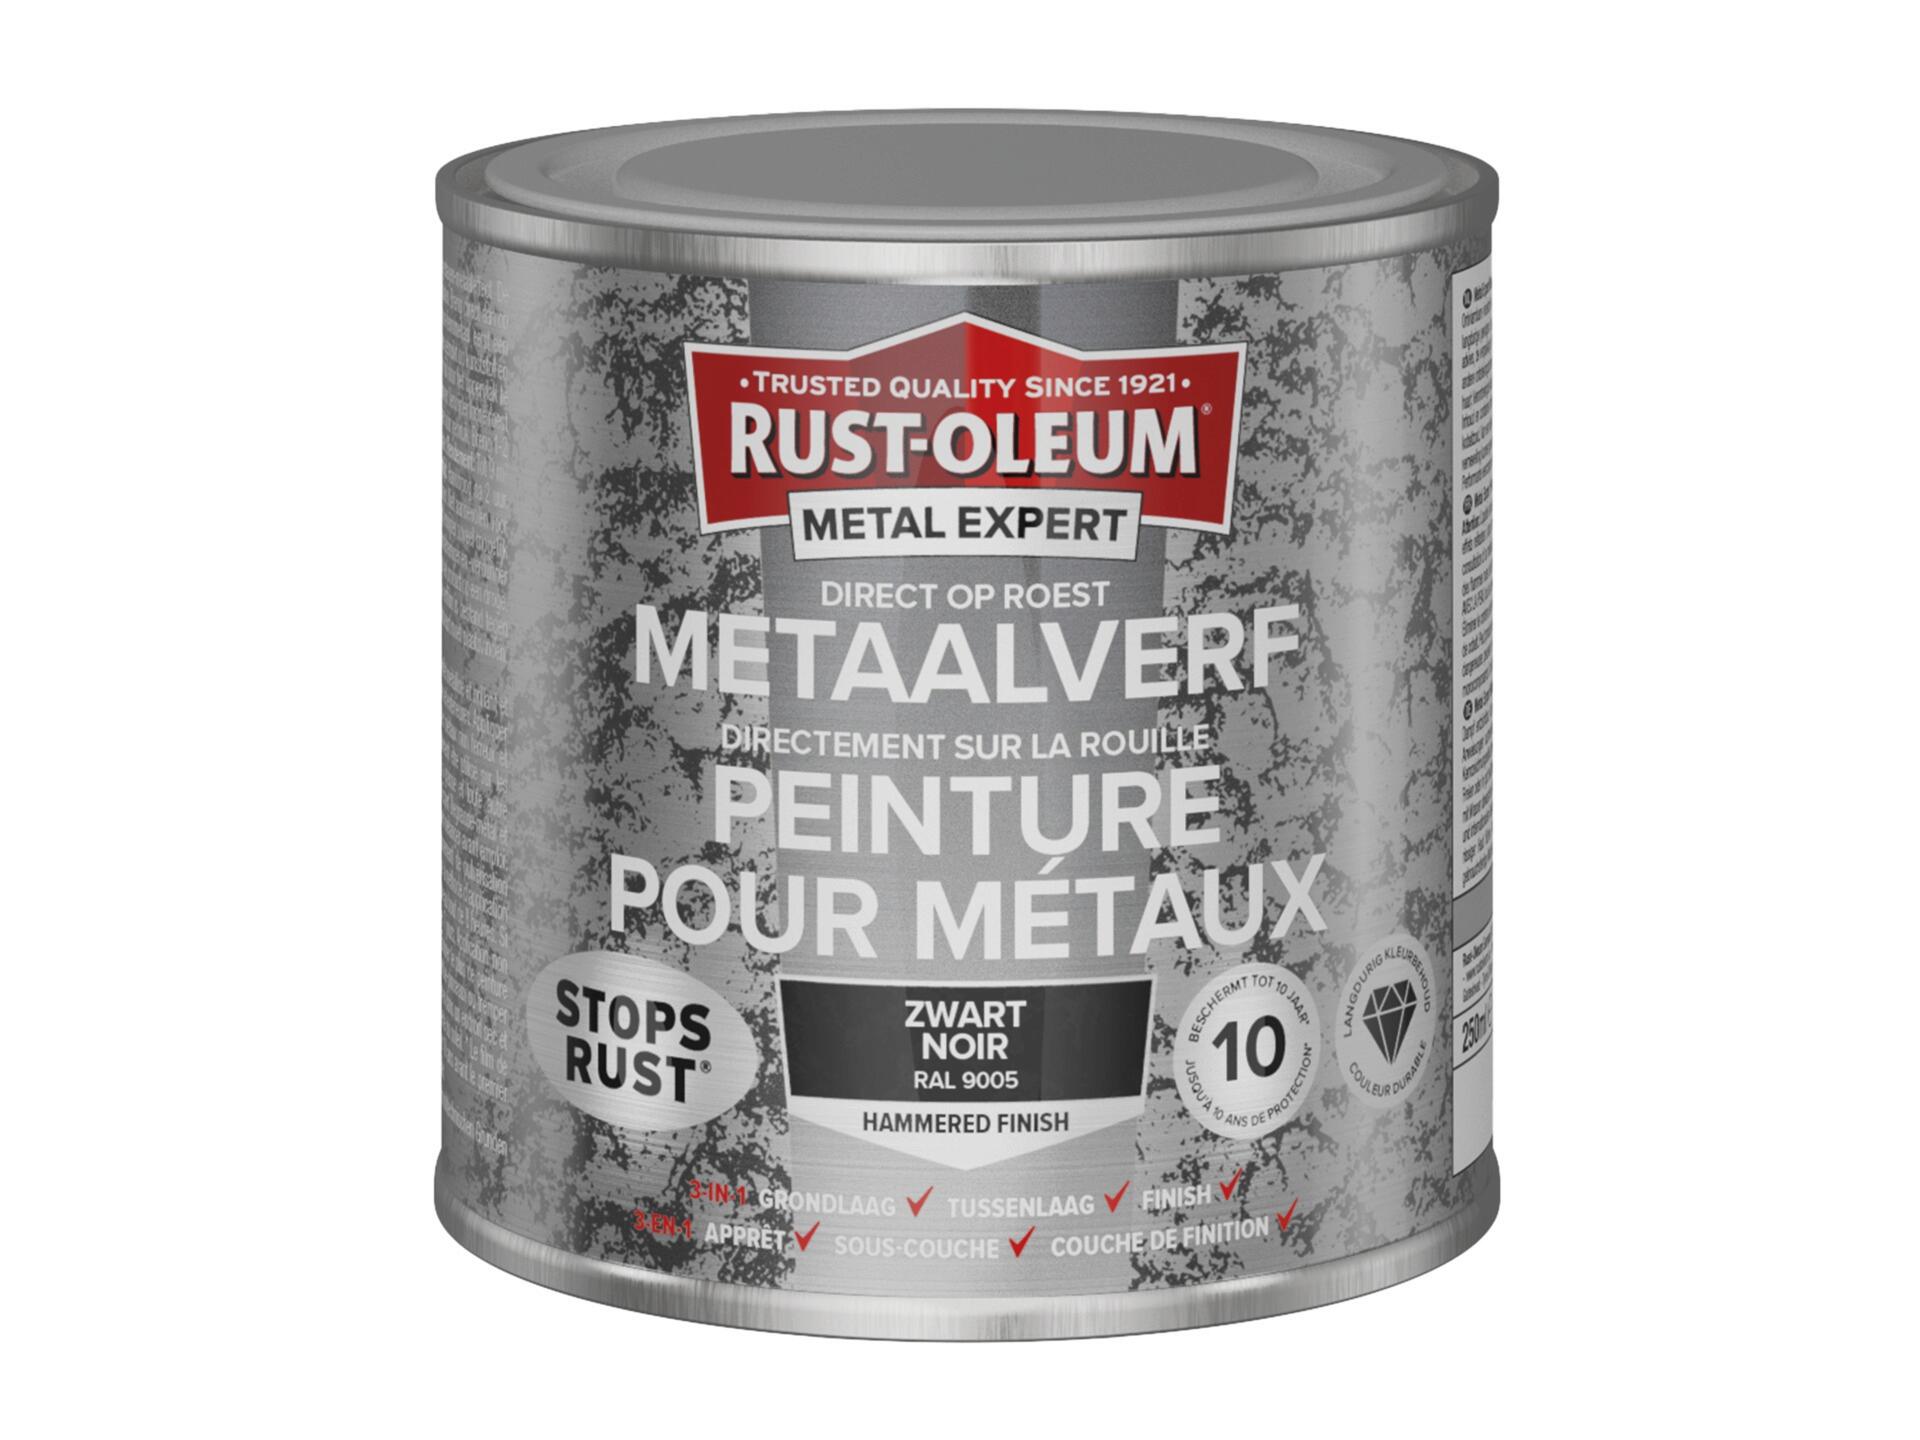 Rust-oleum Metal Expert peinture pour métaux martelé 250ml noir